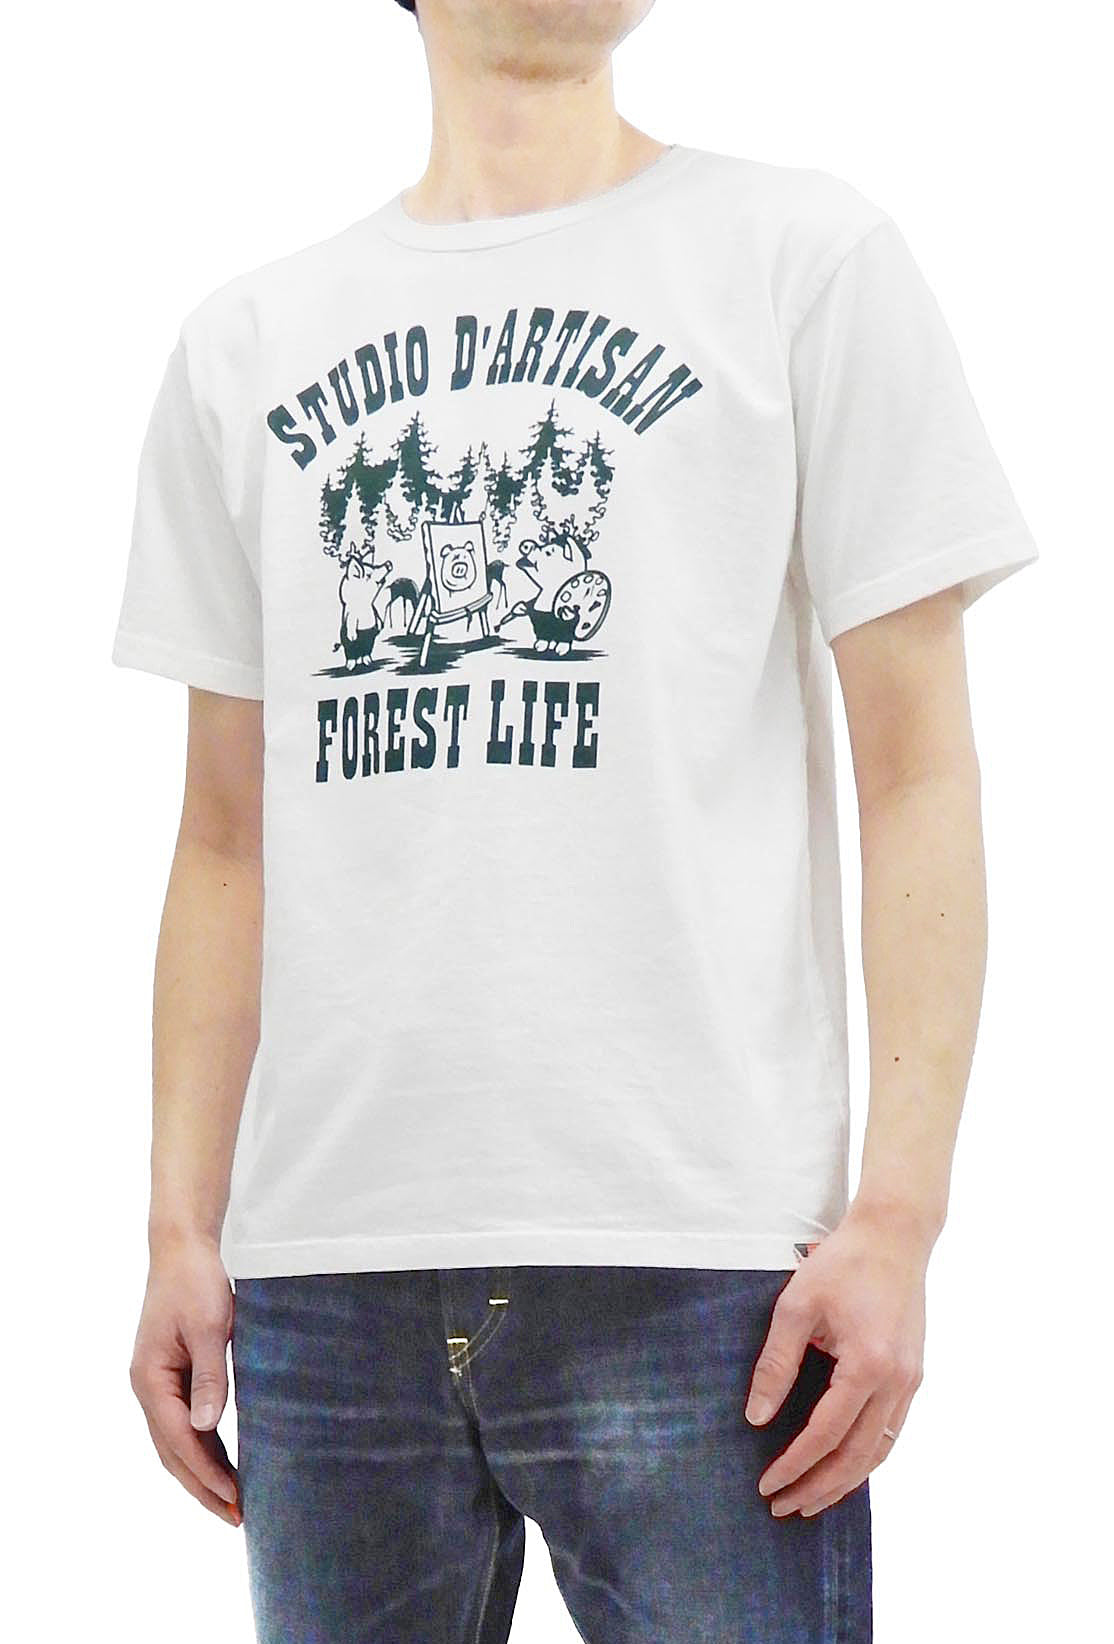 Fishing Life Unisex Short Sleeve T-Shirt – dastardly-designs-studio